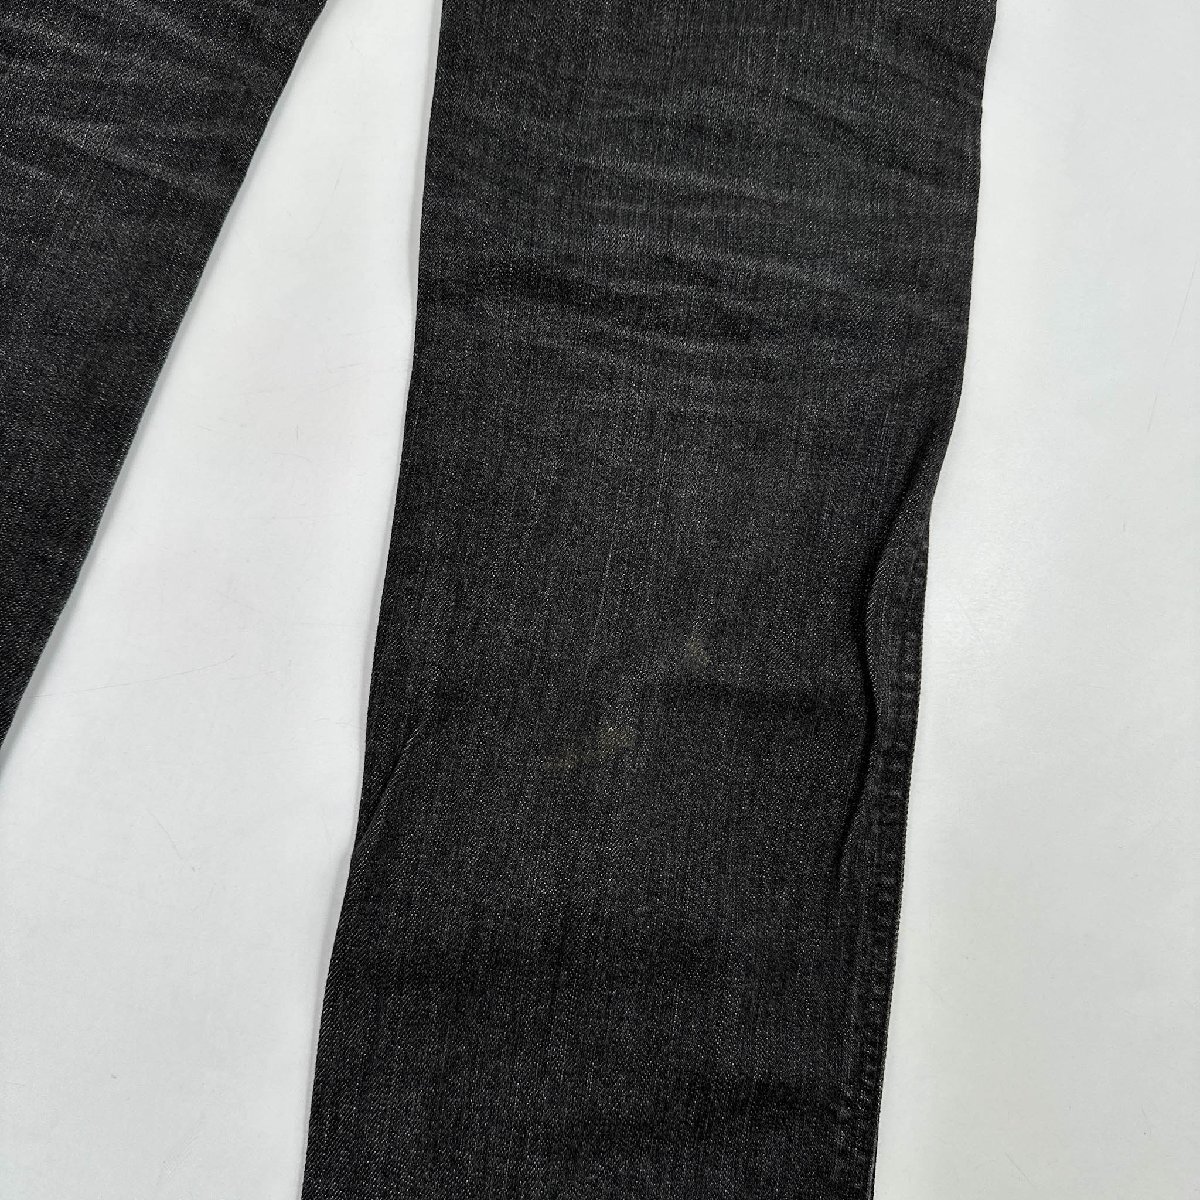 FACTOTUM ファクトタム ブラック デニム パンツ ジーンズ ジーパン ヒゲ ハチノス ボトムス W31/黒 ブラック/メンズ 日本製の画像9